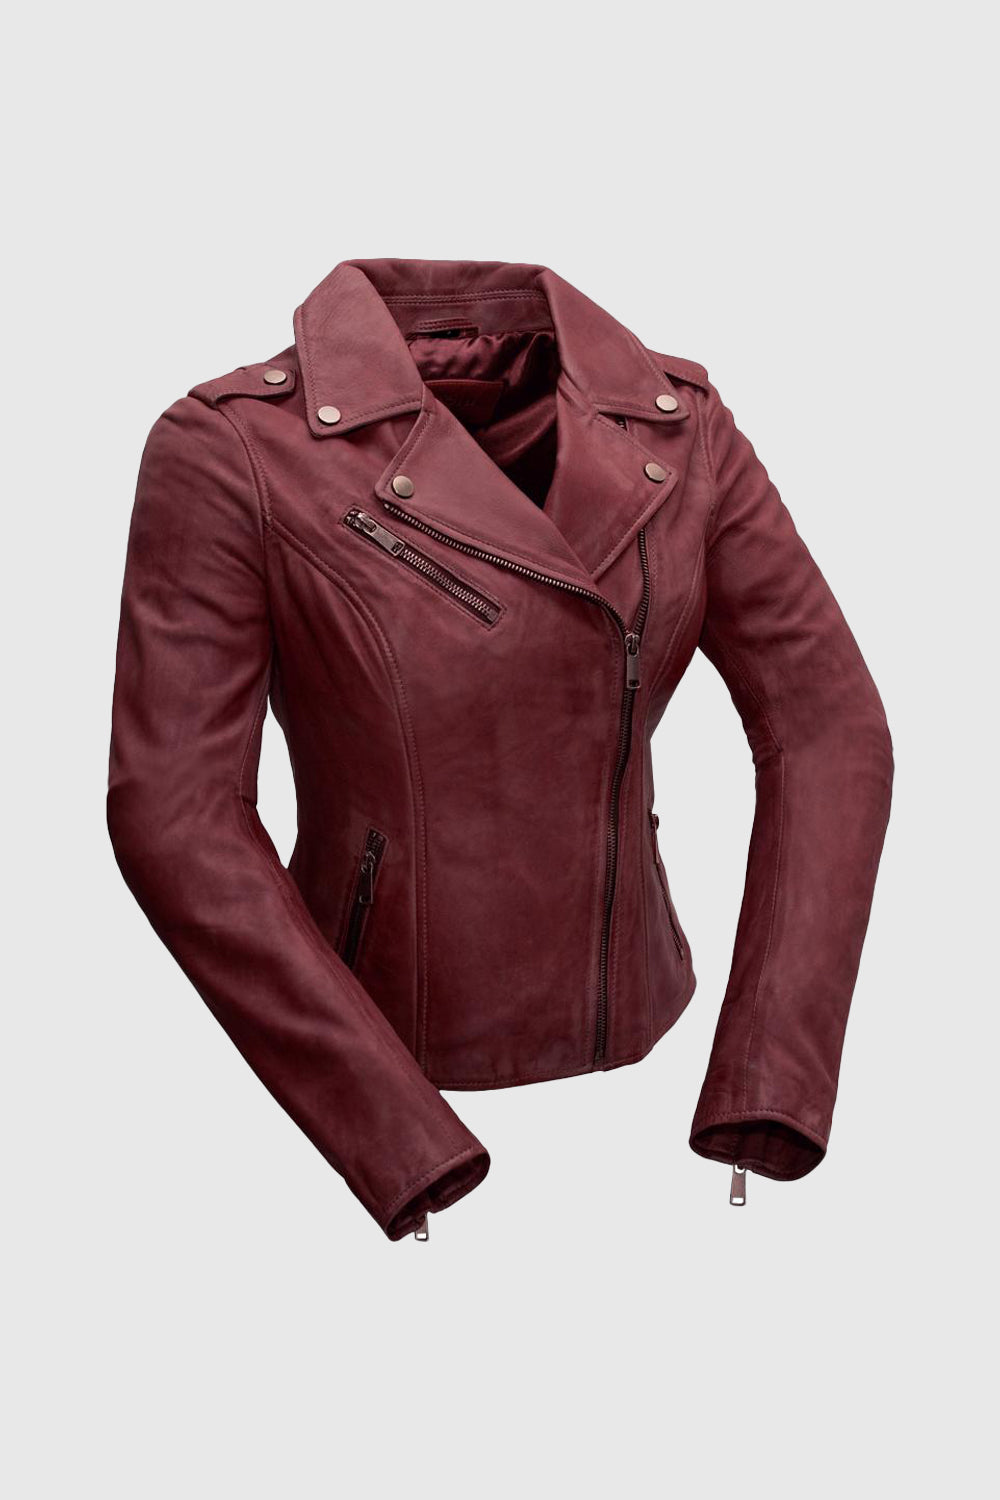 Harper Womens Moto Leather Jacket (Oxblood) Women's Leather Jacket Whet Blu NYC XS OXBLOOD 